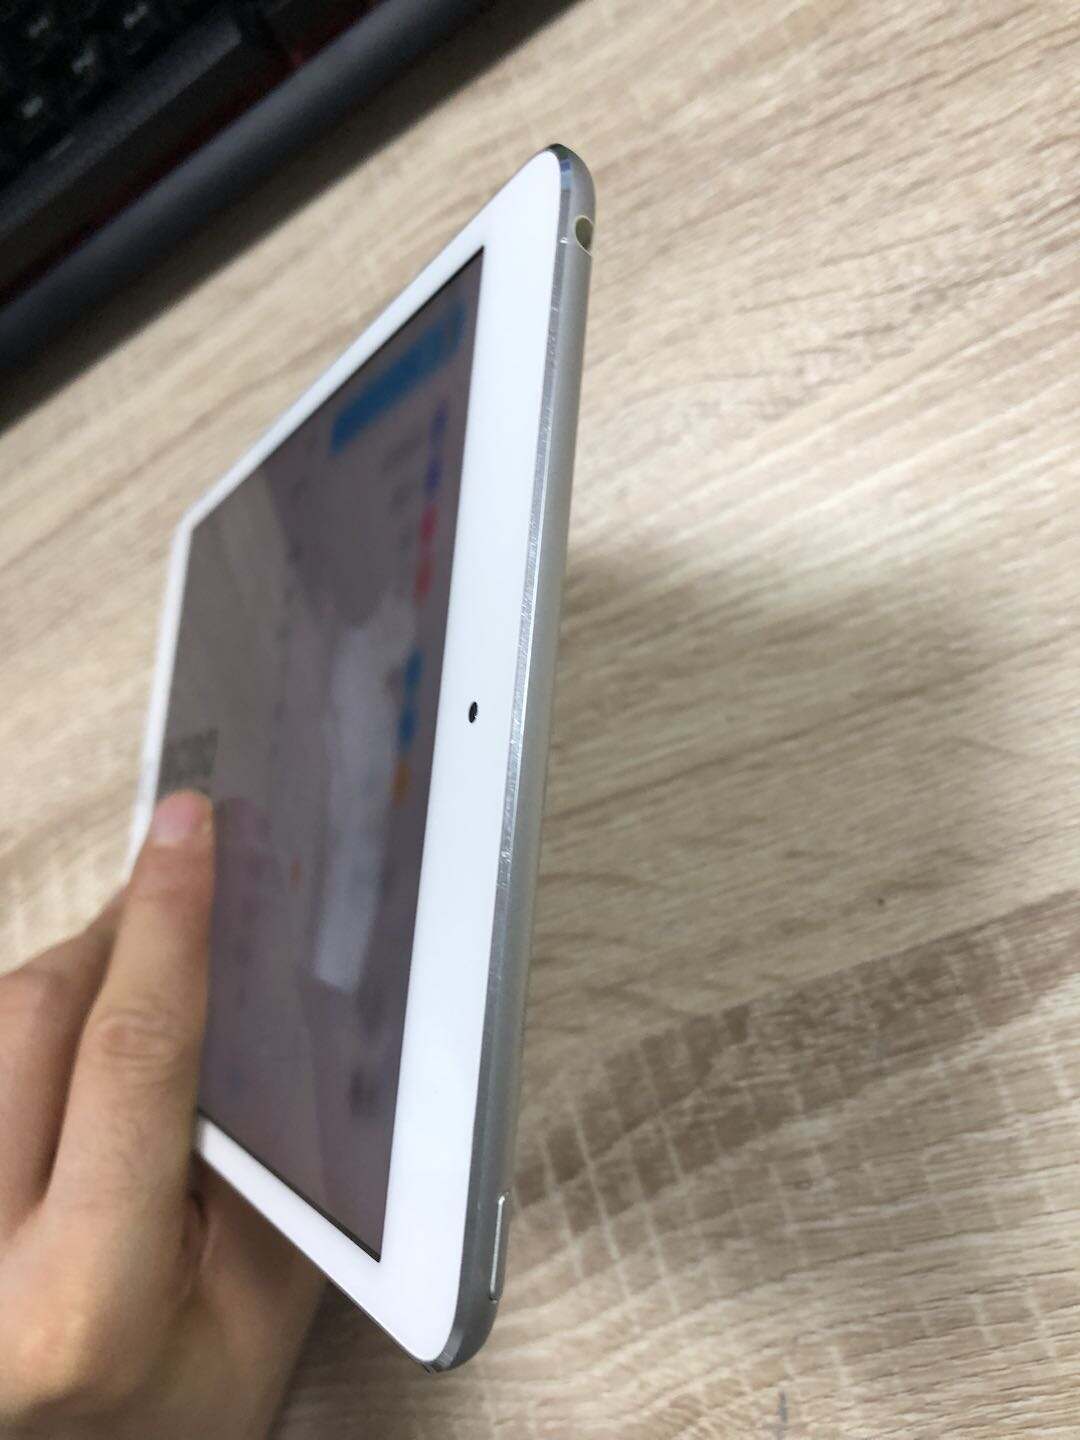 iPad mini4 (2015)7.9英寸 16G